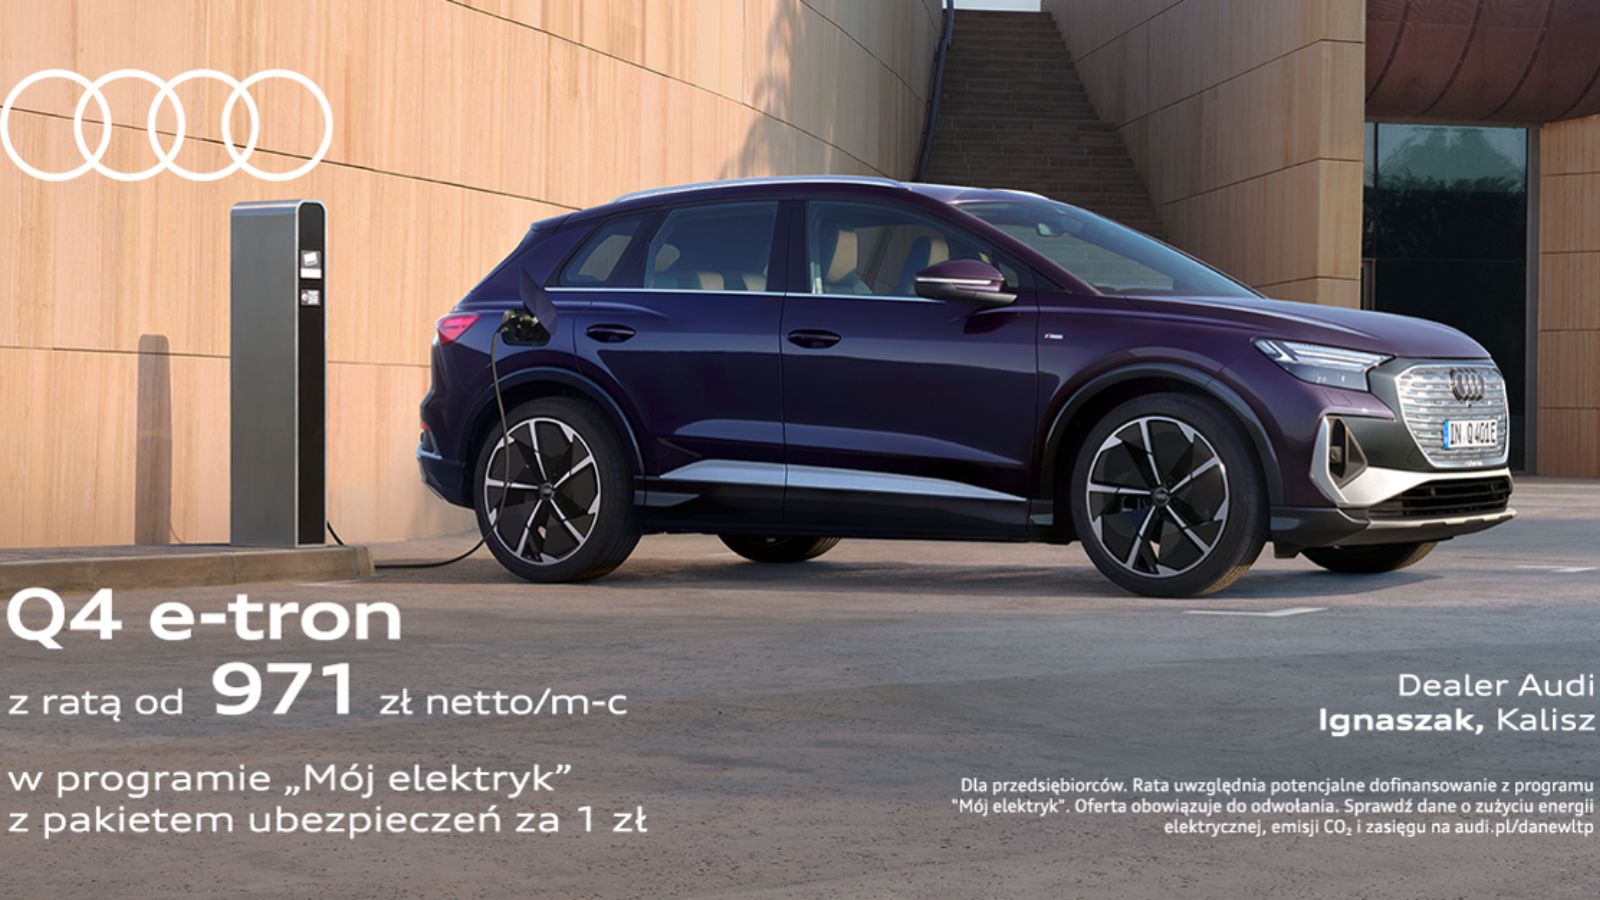 Audi Q4 e-tron „Mój elektryk” - Twoja przepustka do świata nowoczesnej mobilności